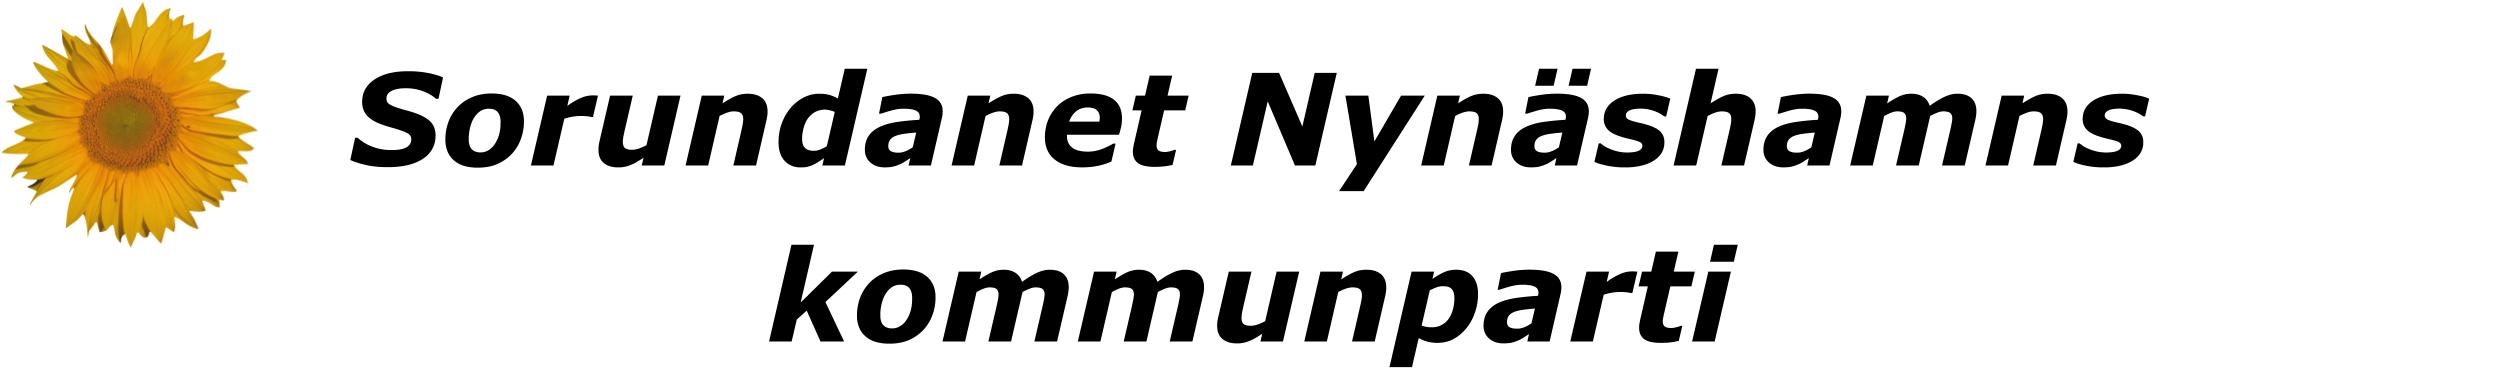 Sorundanet Nynäshamns kommunparti - vår symbol är en solros - en ros utan taggar!